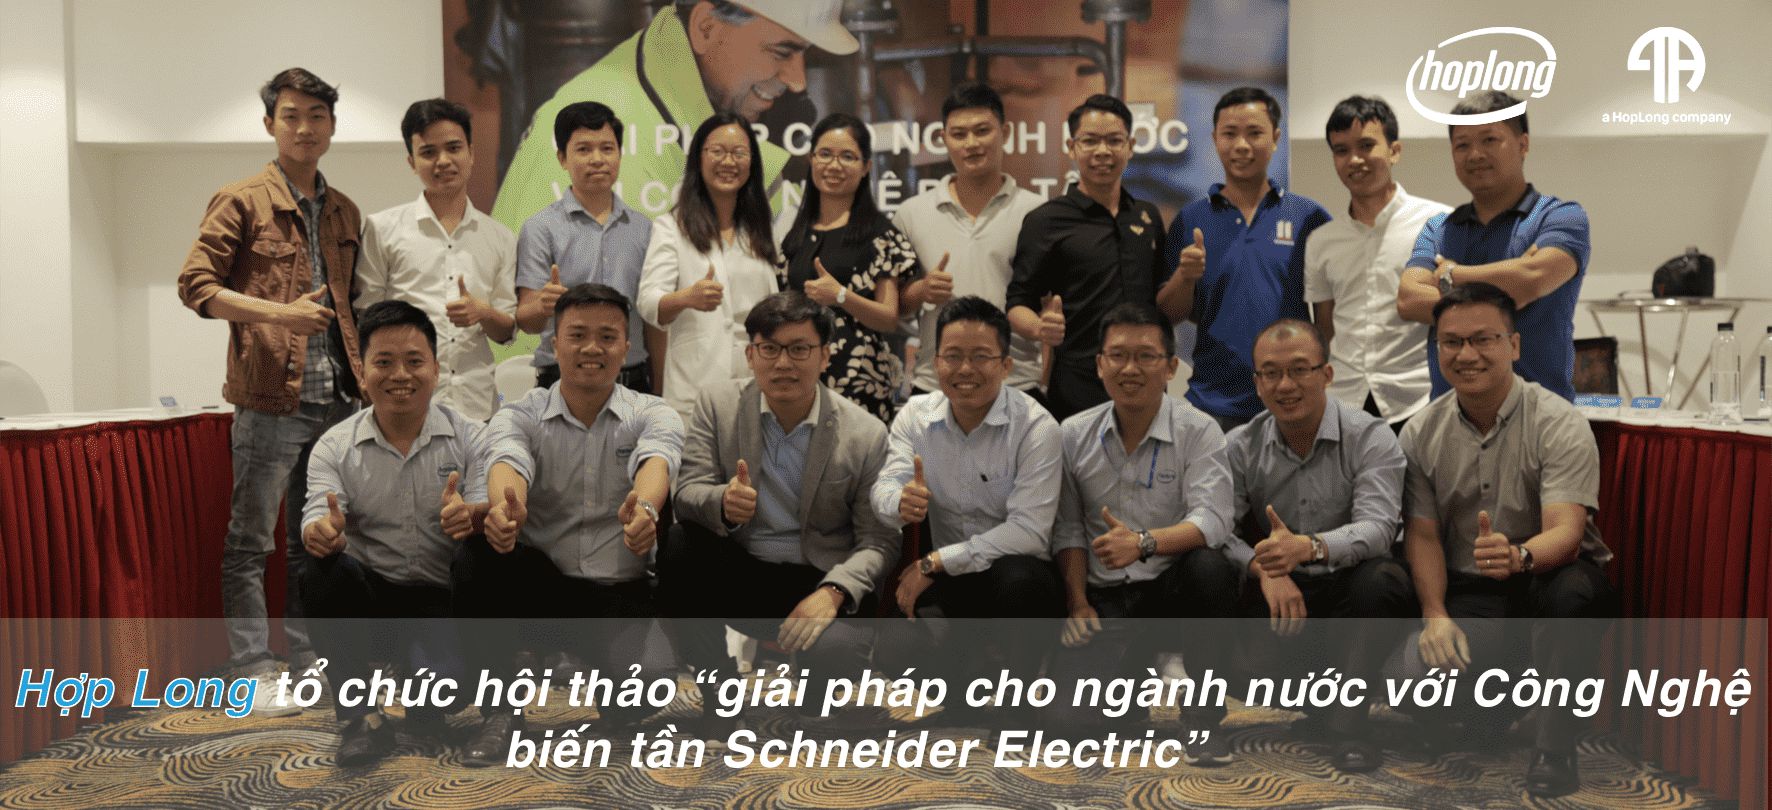 Hợp Long Tổ Chức Hội Thảo “Giải Pháp Cho Ngành Nước Với Công Nghệ Biến Tần Schneider Electric”